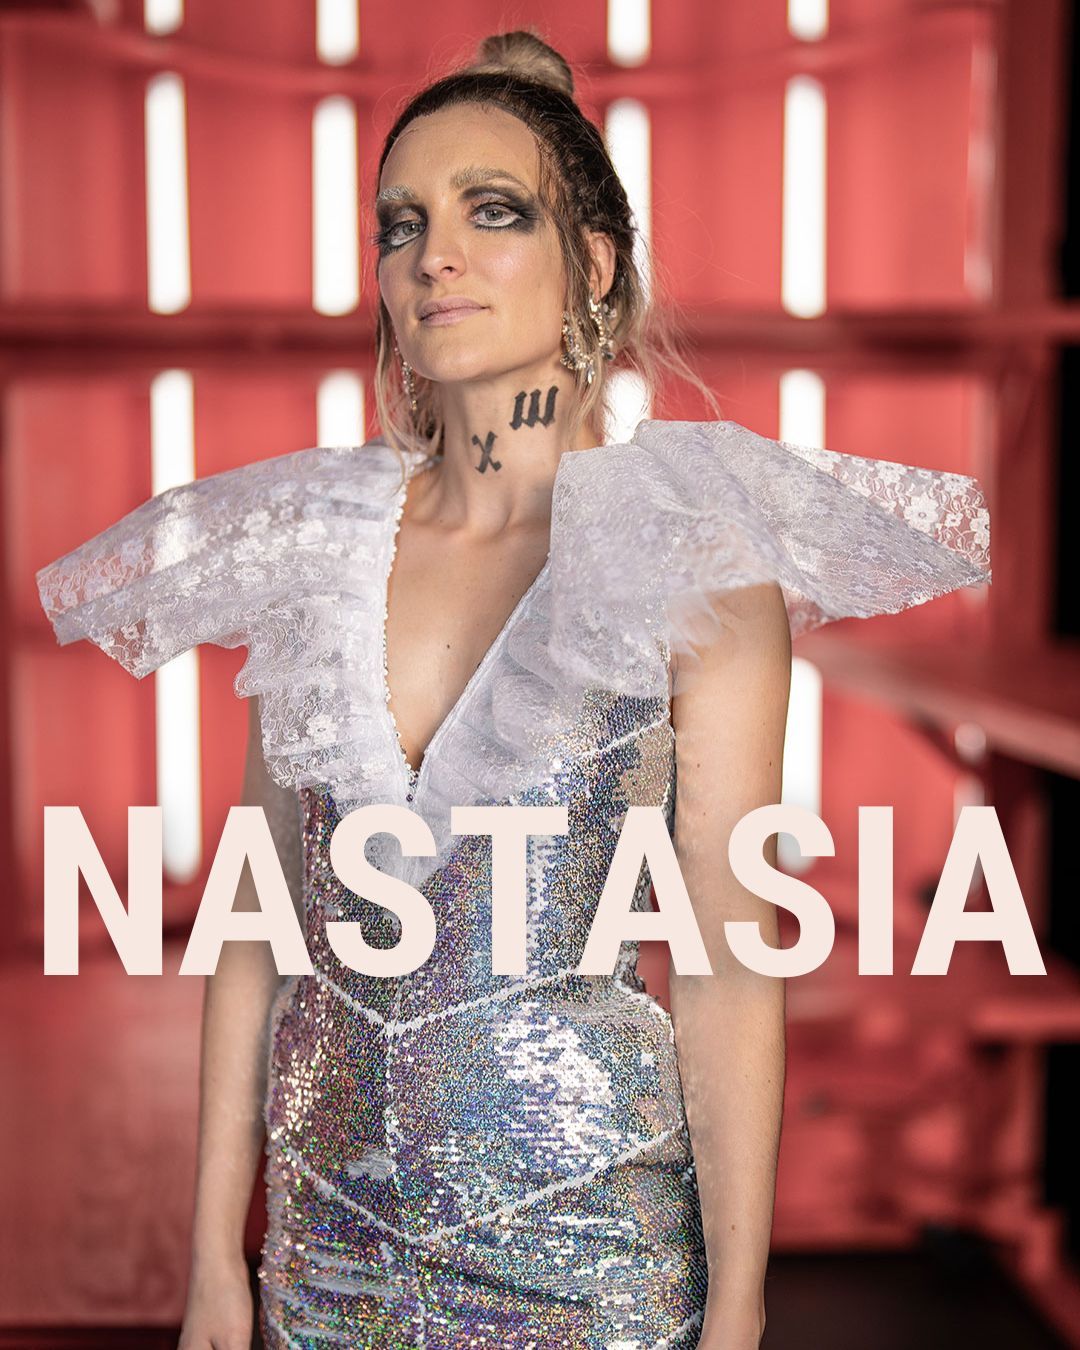 Portrettfoto av Nastasia i Idioten